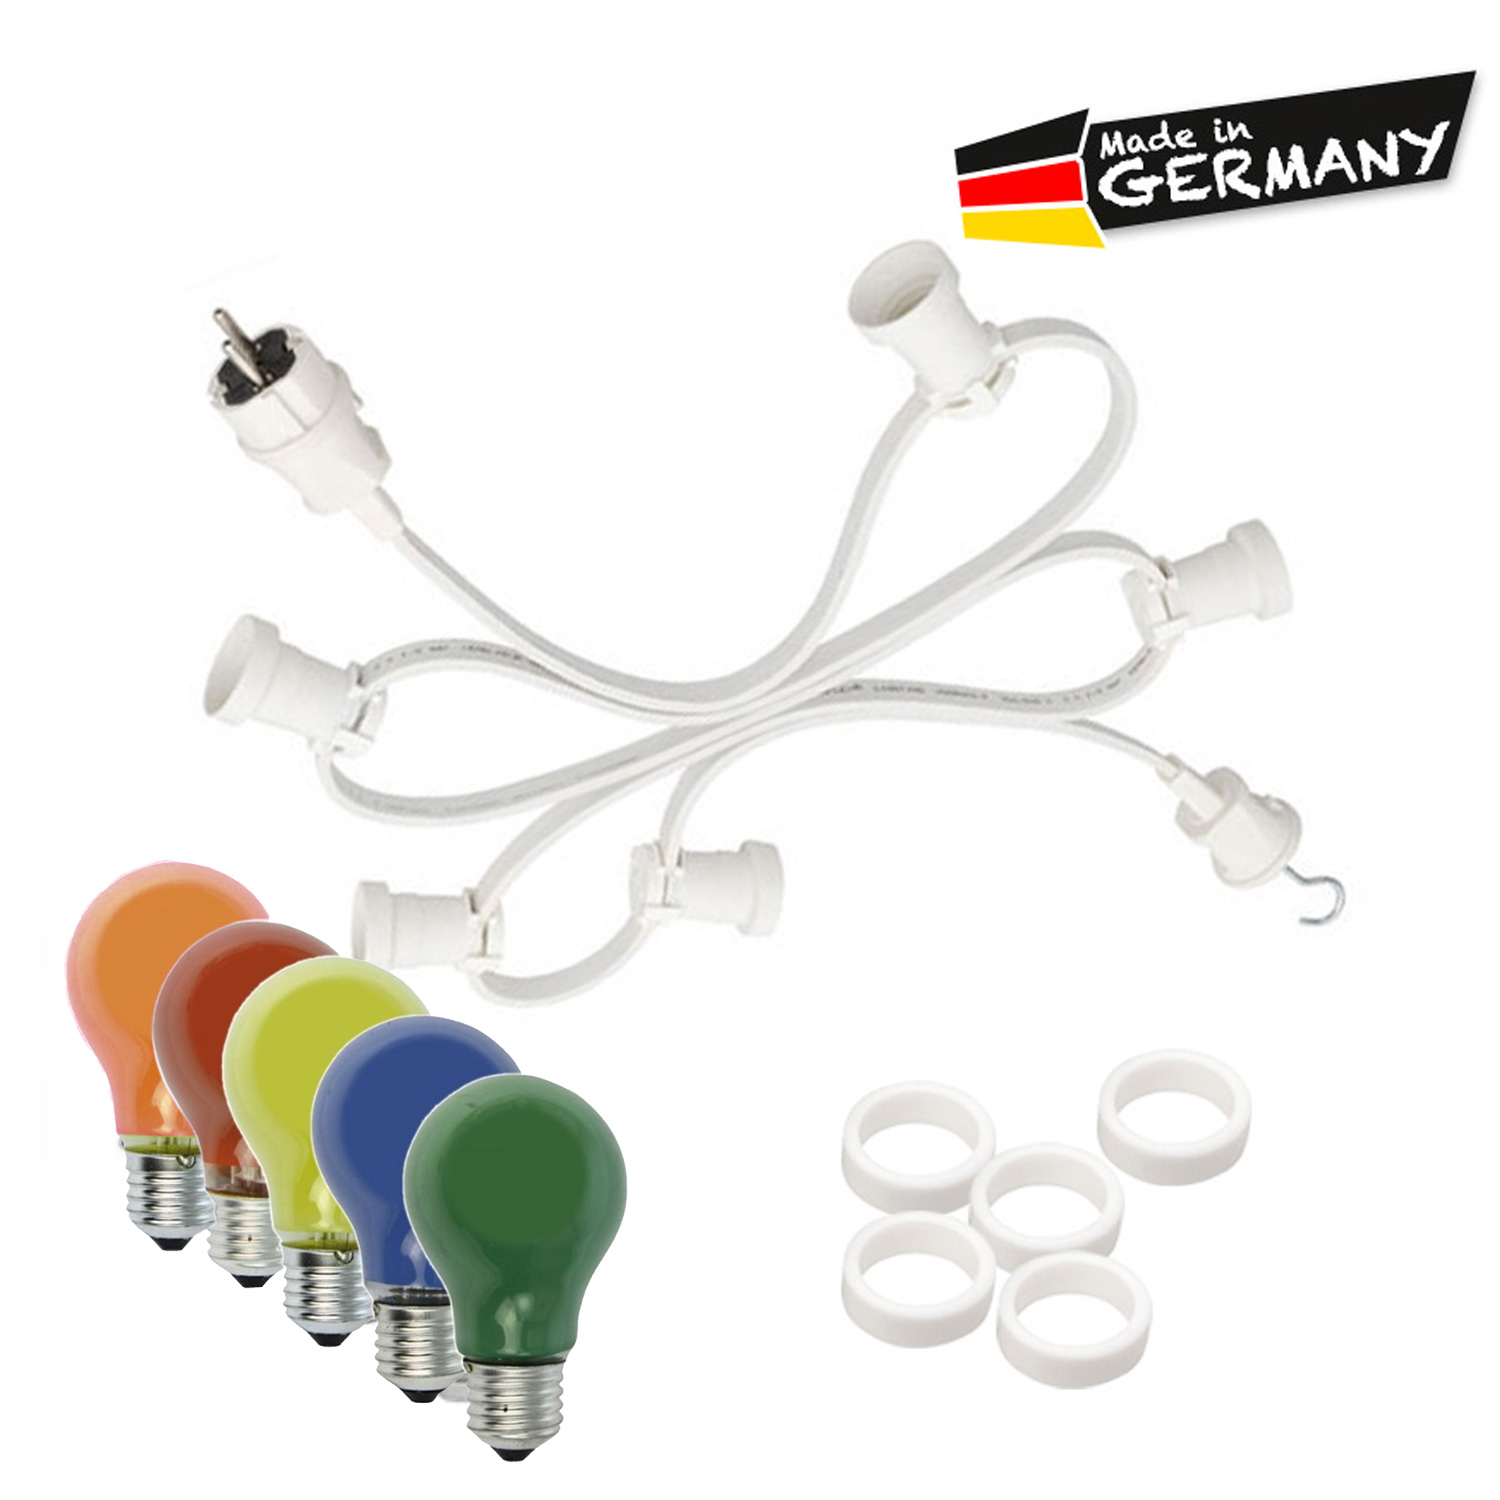 Illu-/Partylichterkette 10m - Außenlichterkette weiß - Made in Germany - 10 x bunte 25W Glühlampen